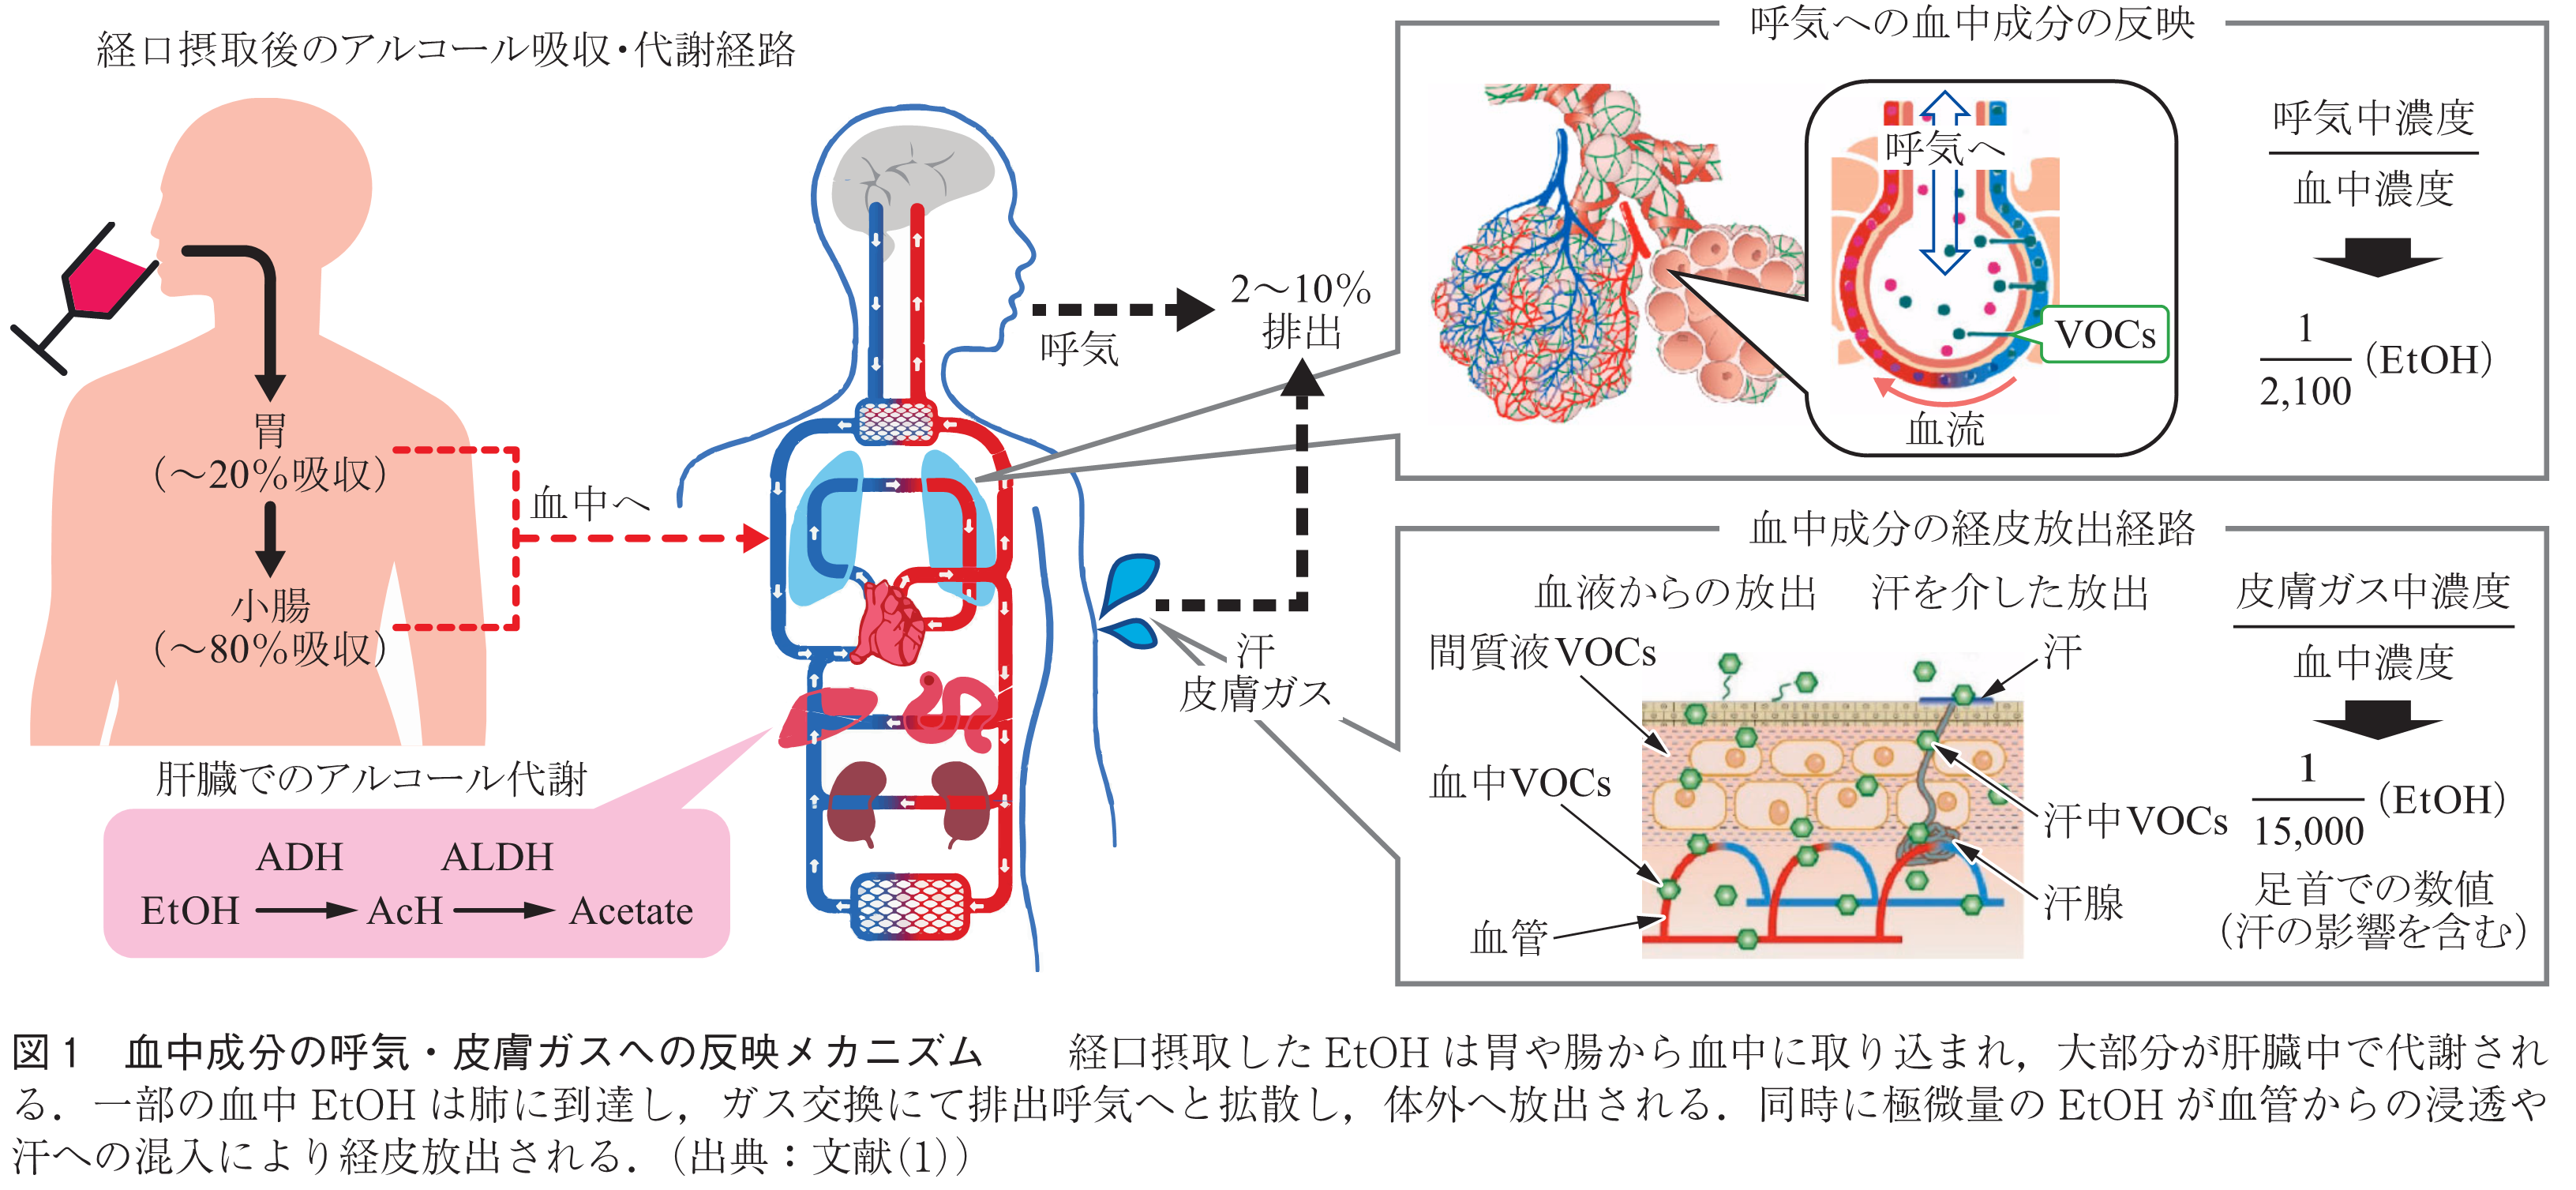 図1　血中成分の呼気・皮膚ガスへの反映メカニズム　　経口摂取したEtOHは胃や腸から血中に取り込まれ，大部分が肝臓中で代謝される．一部の血中EtOHは肺に到達し，ガス交換にて排出呼気へと拡散し，体外へ放出される．同時に極微量のEtOHが血管からの浸透や汗への混入により経皮放出される．（出典：文献(1)）